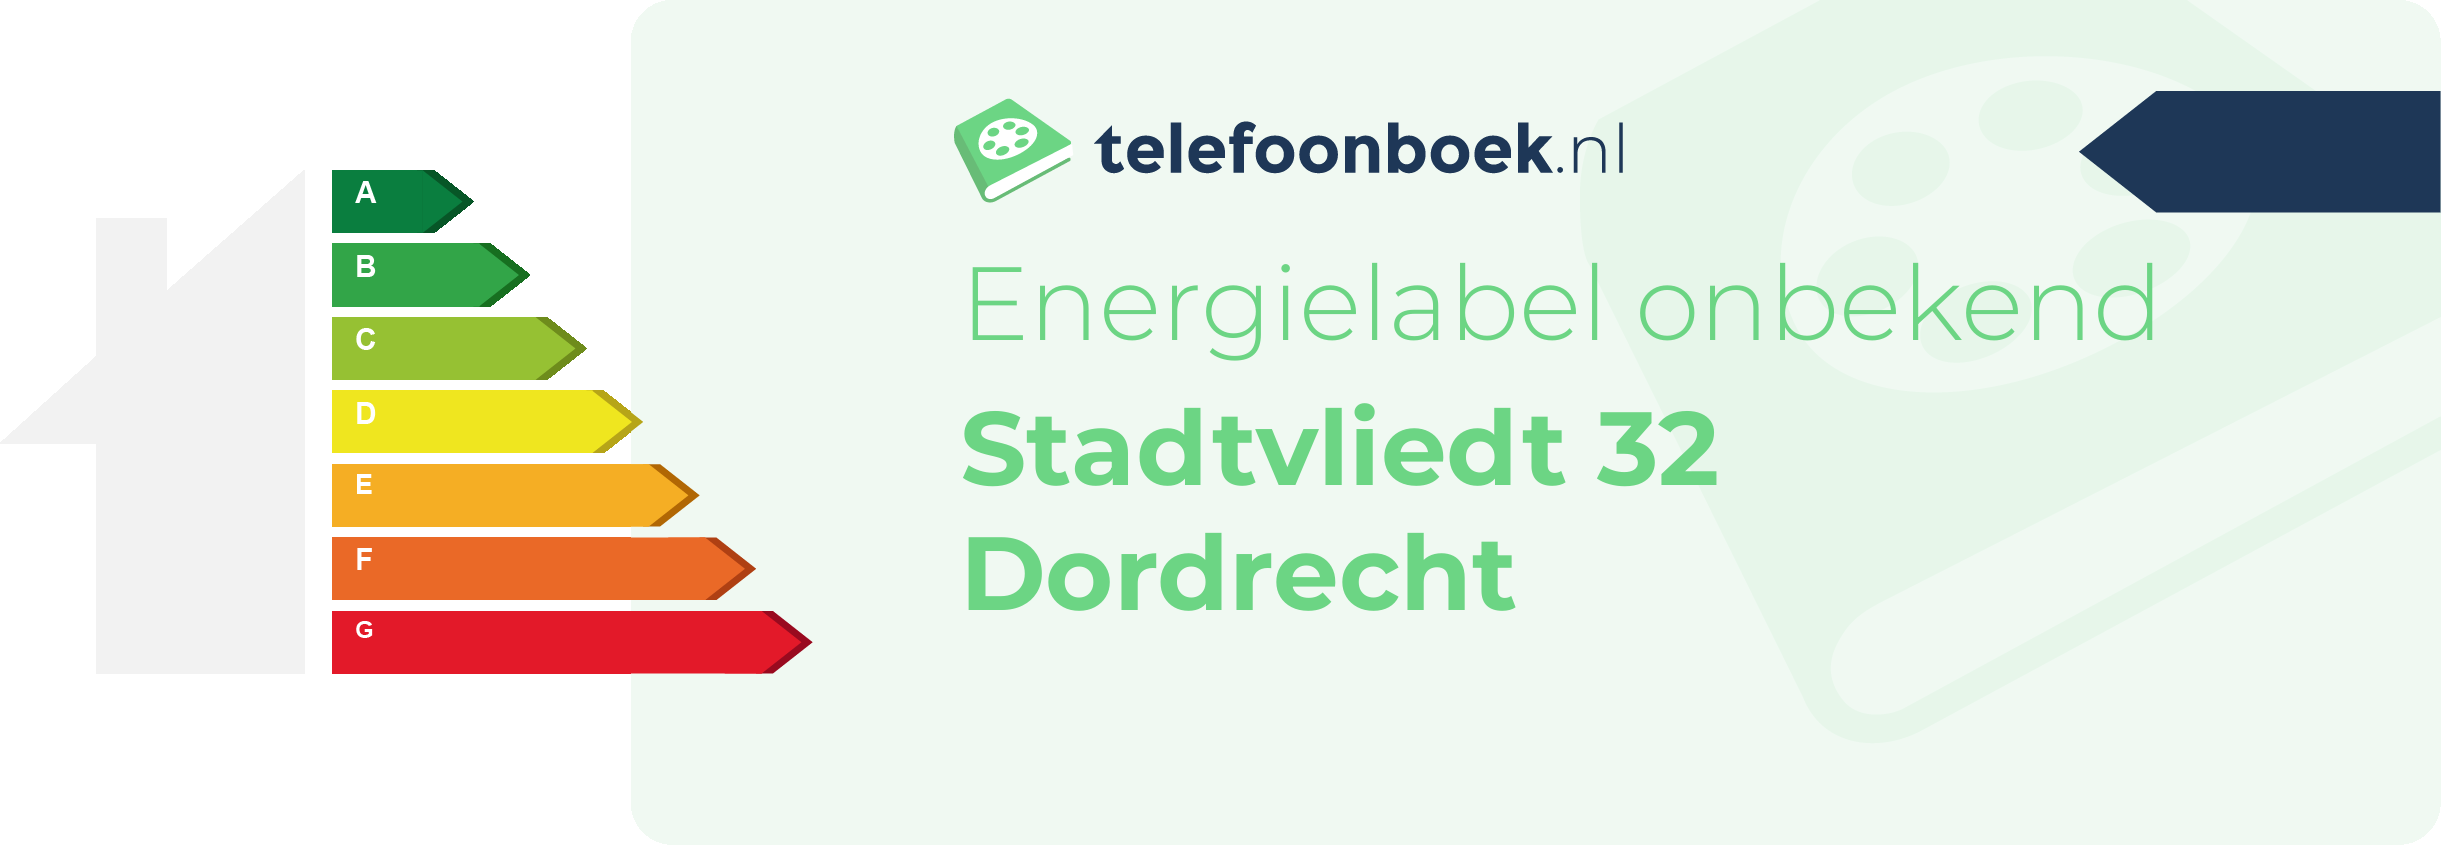 Energielabel Stadtvliedt 32 Dordrecht